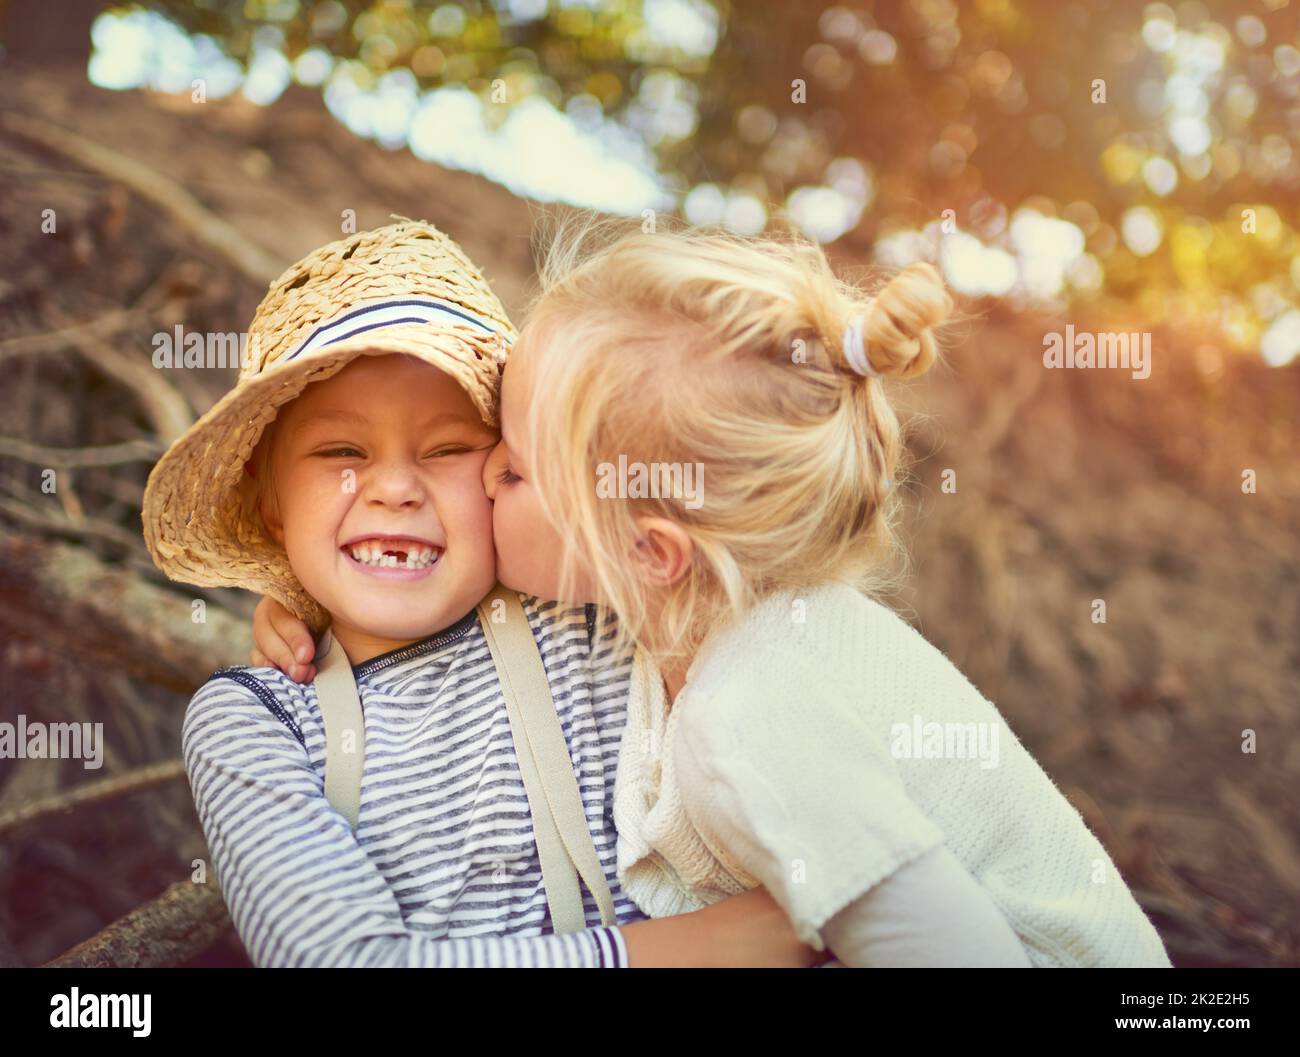 Die Bindung zwischen Geschwistern ist unzerbrechlich. Aufnahme von zwei kleinen Kindern, die im Freien zusammen spielen. Stockfoto